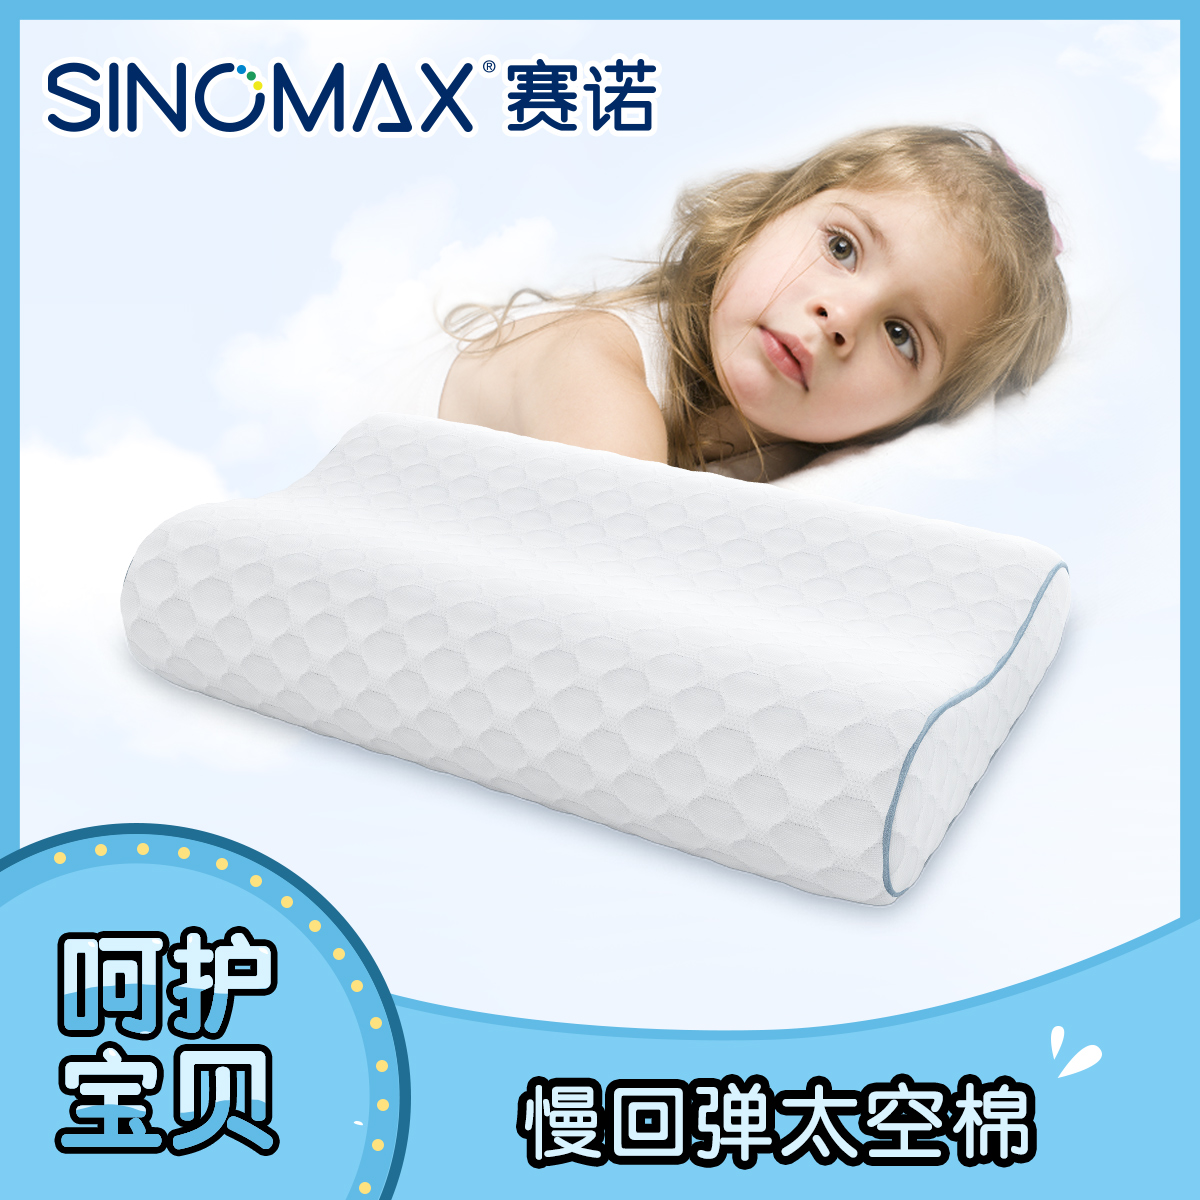 冰凉幼儿园睡觉枕头三层可调节